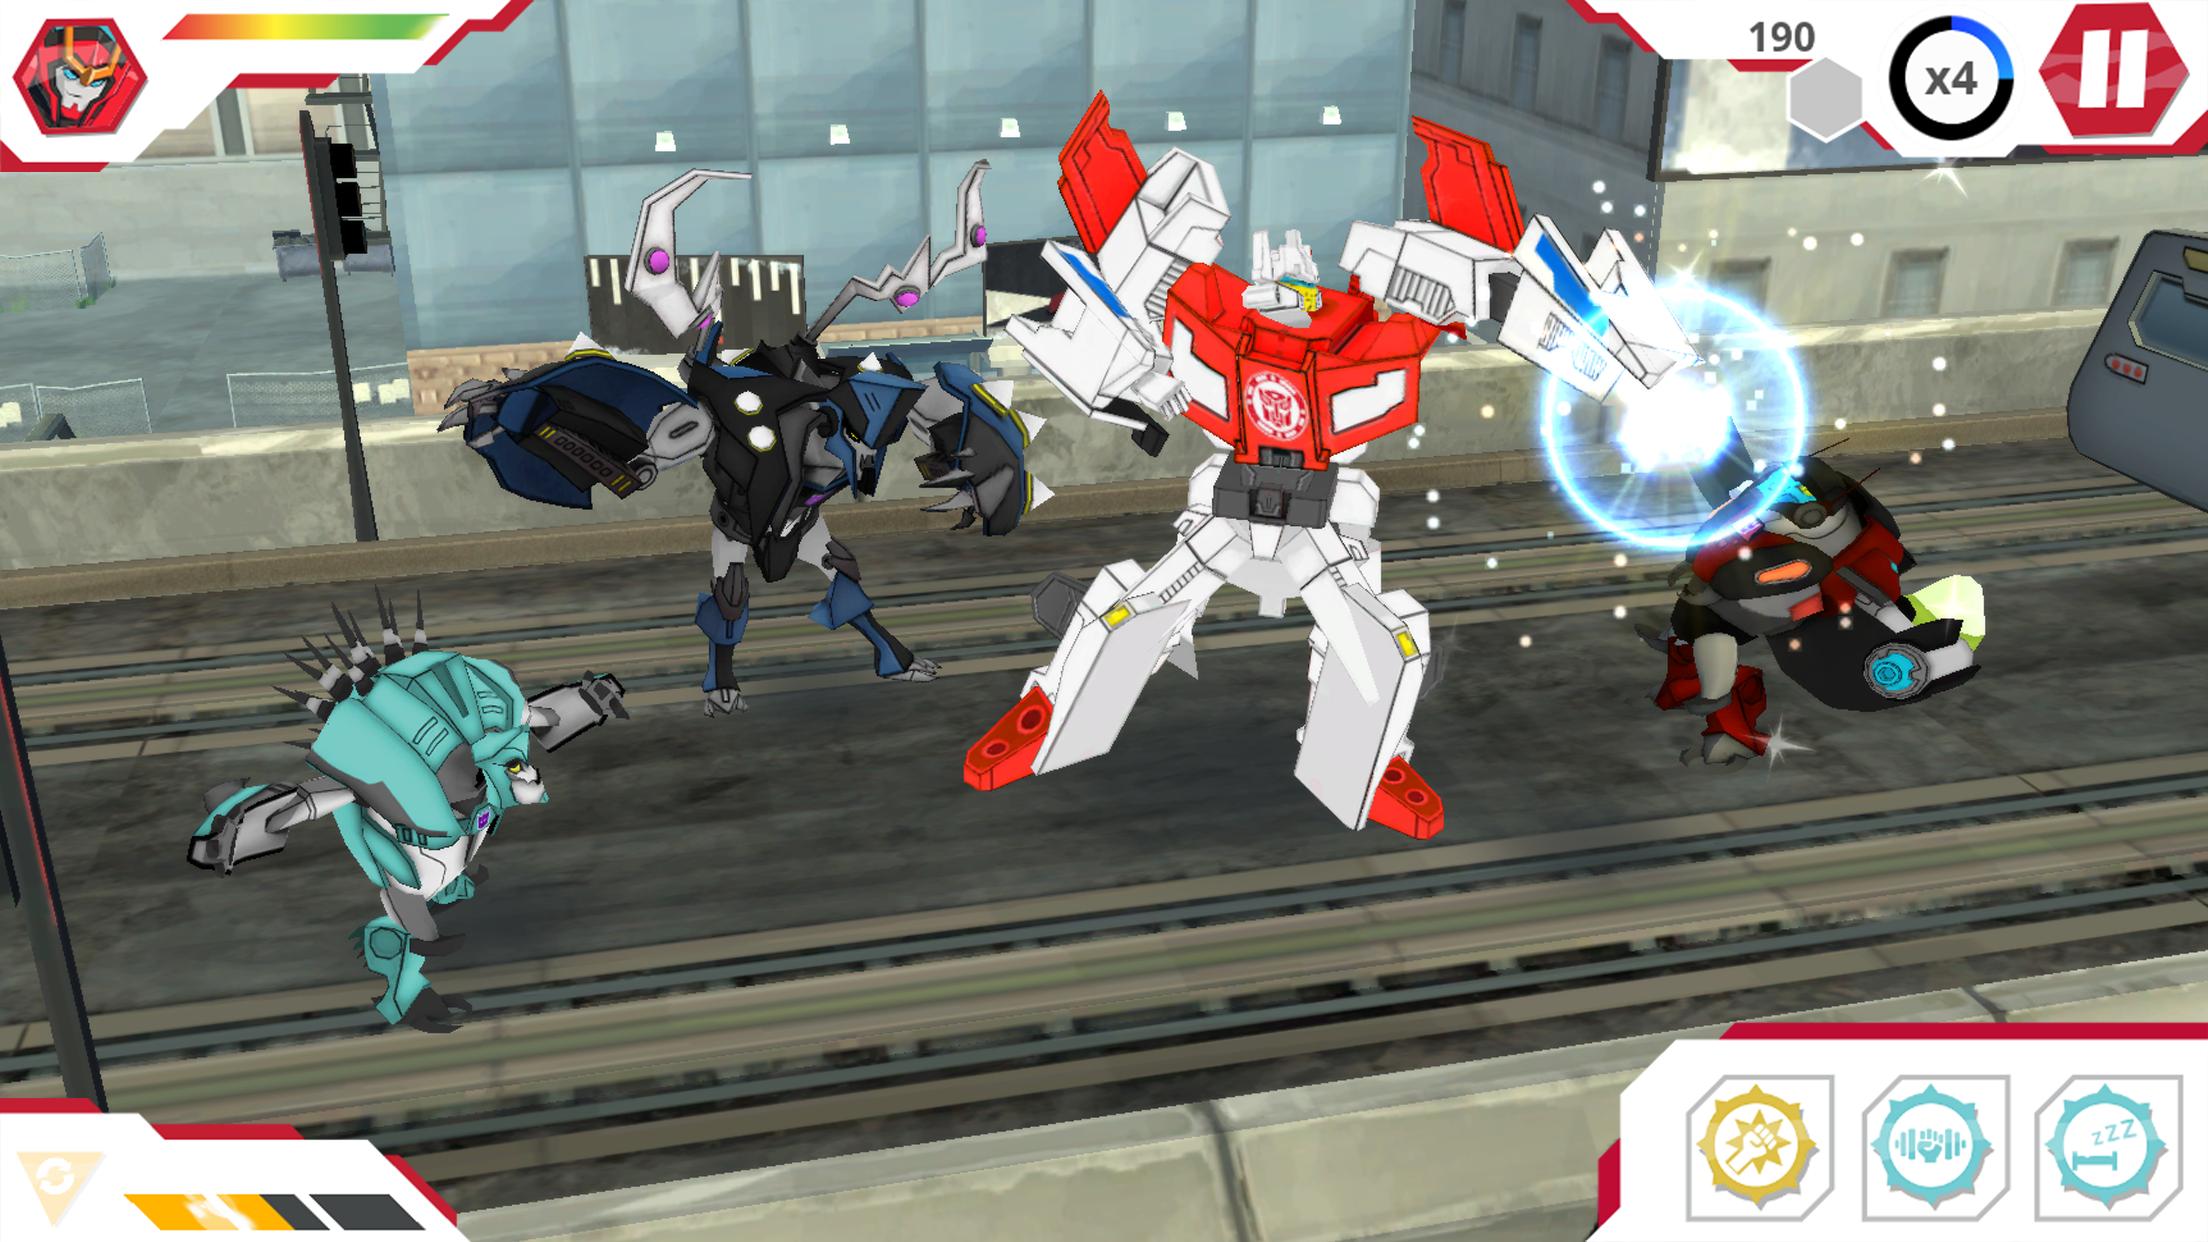 Игра команда роботов. Трансформеры роботы под прикрытием игра. Роботы коды на игру Transformers. Transformers Robots in Disguise игра на андроид. Robots in Disguise трансформеры игра.